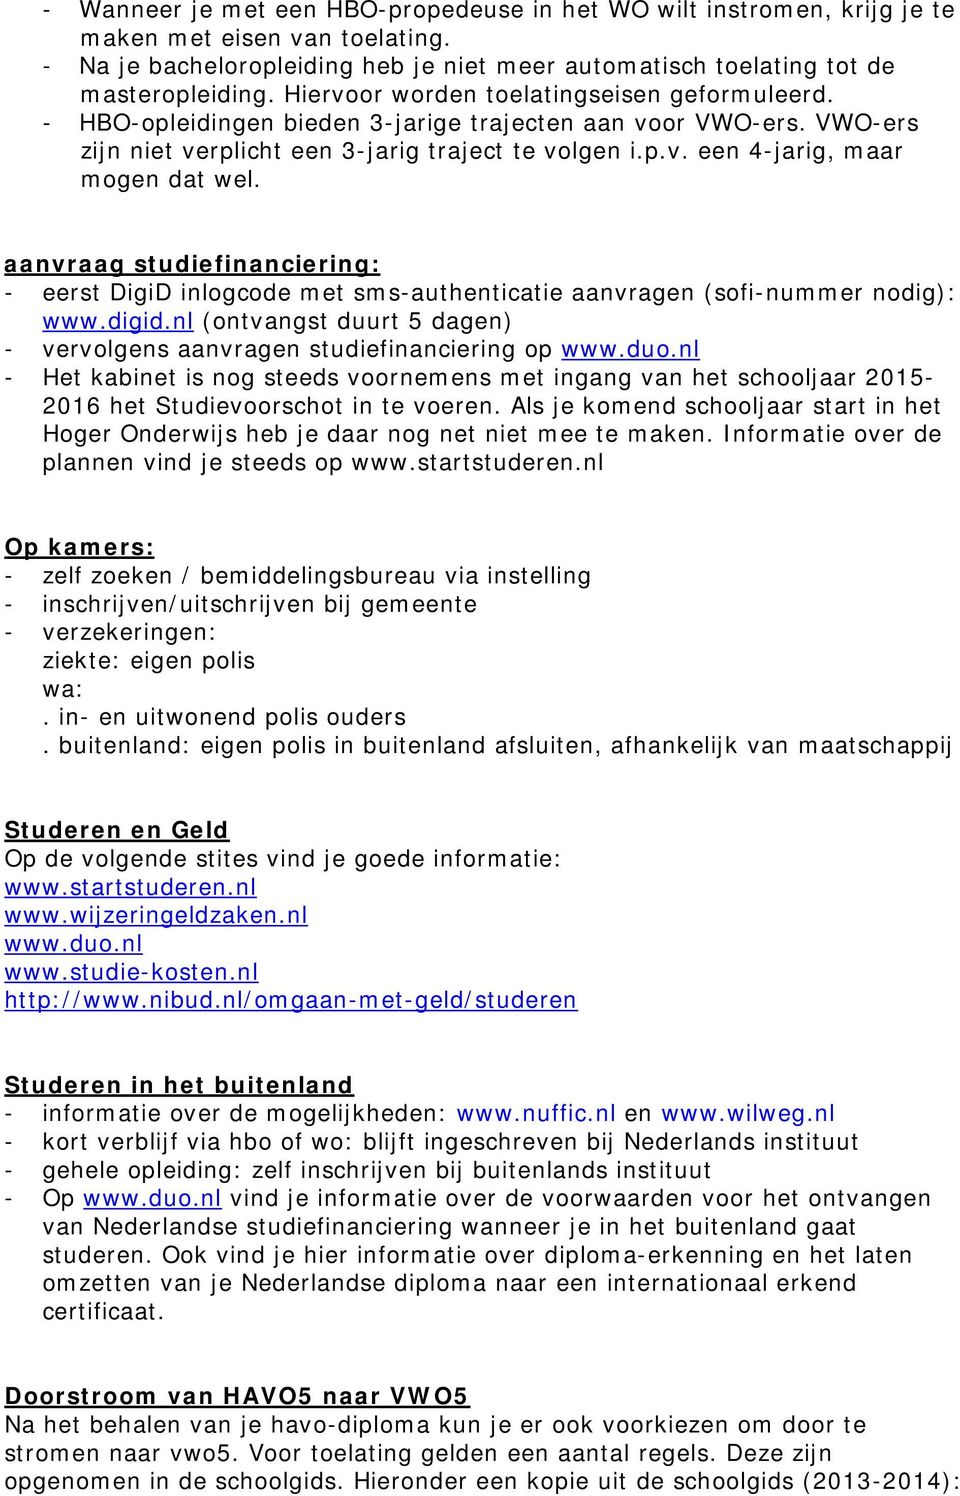 aanvraag studiefinanciering: - eerst DigiD inlogcode met sms-authenticatie aanvragen (sofi-nummer nodig): www.digid.nl (ontvangst duurt 5 dagen) - vervolgens aanvragen studiefinanciering op www.duo.